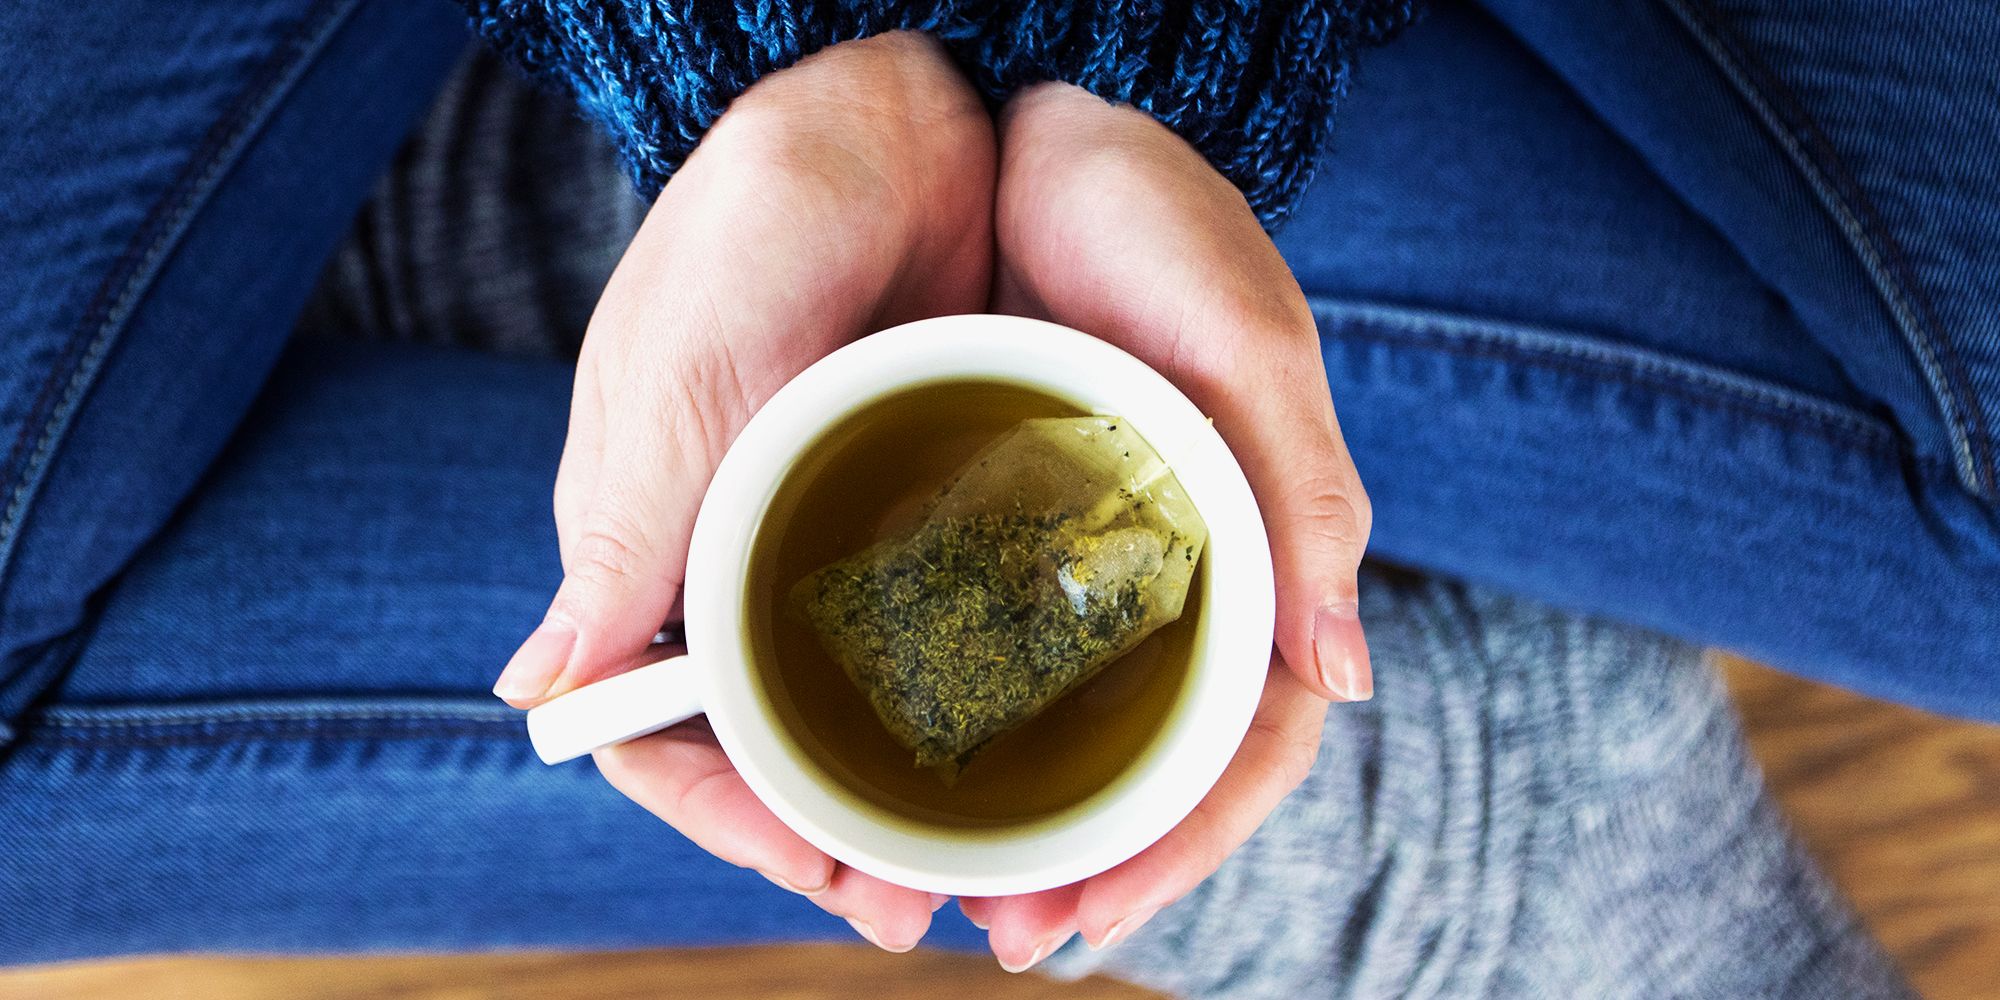 Tea Health Benefits Chart